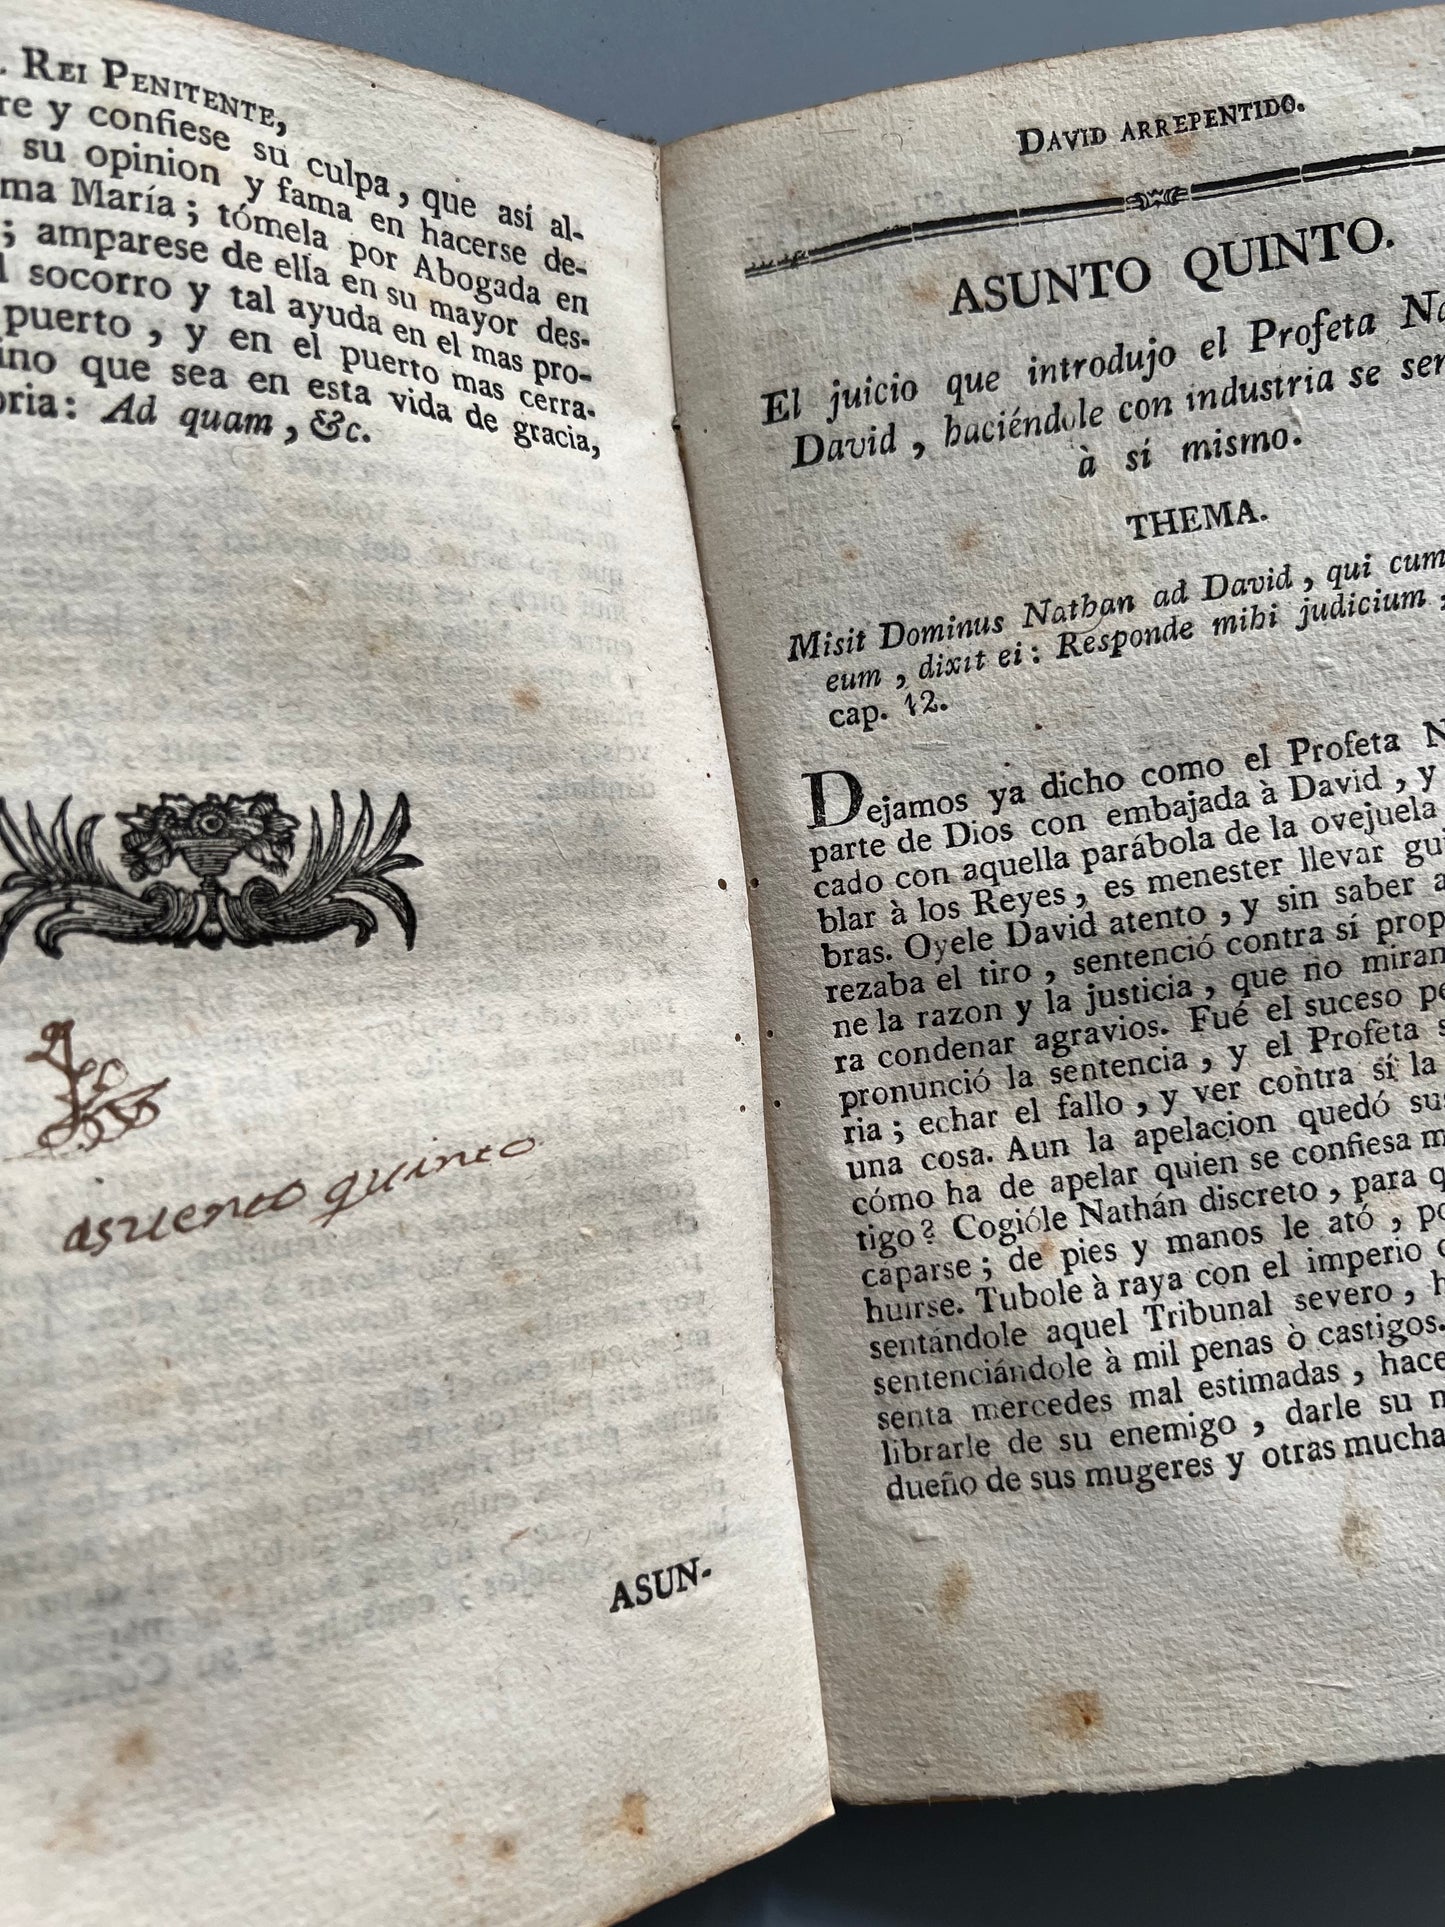 El rey penitente David arrepentido, Christobal Lozano - Librería de la viuda Piferrer, ca. 1733